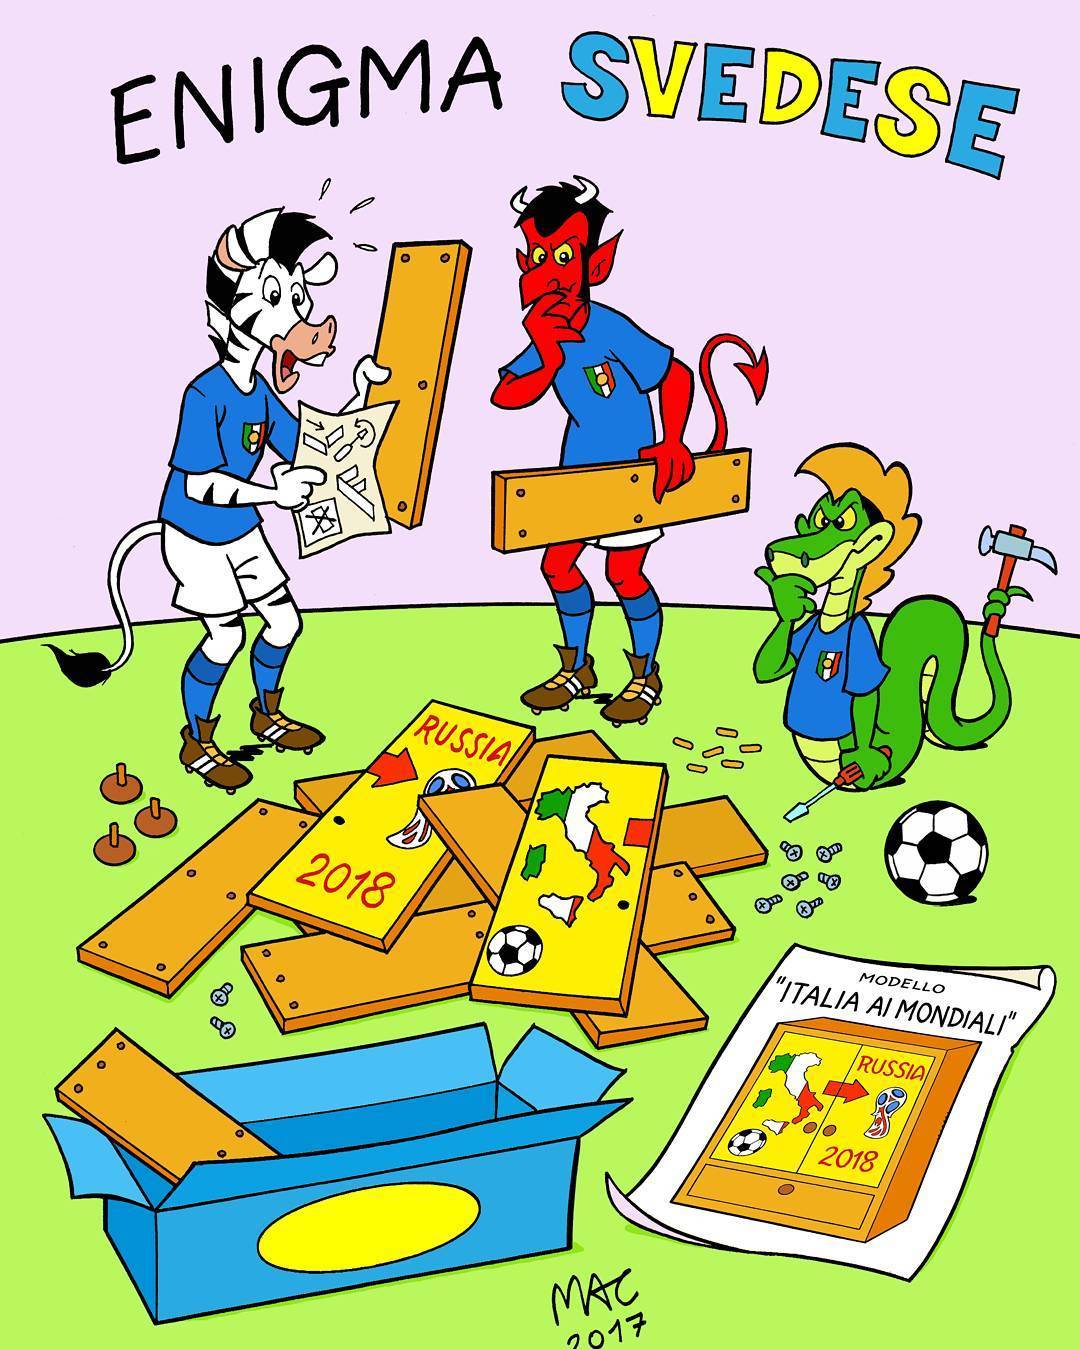 Итальянский футбол в карикатурах: апокалипсис в сборной (Фото) - изображение 2